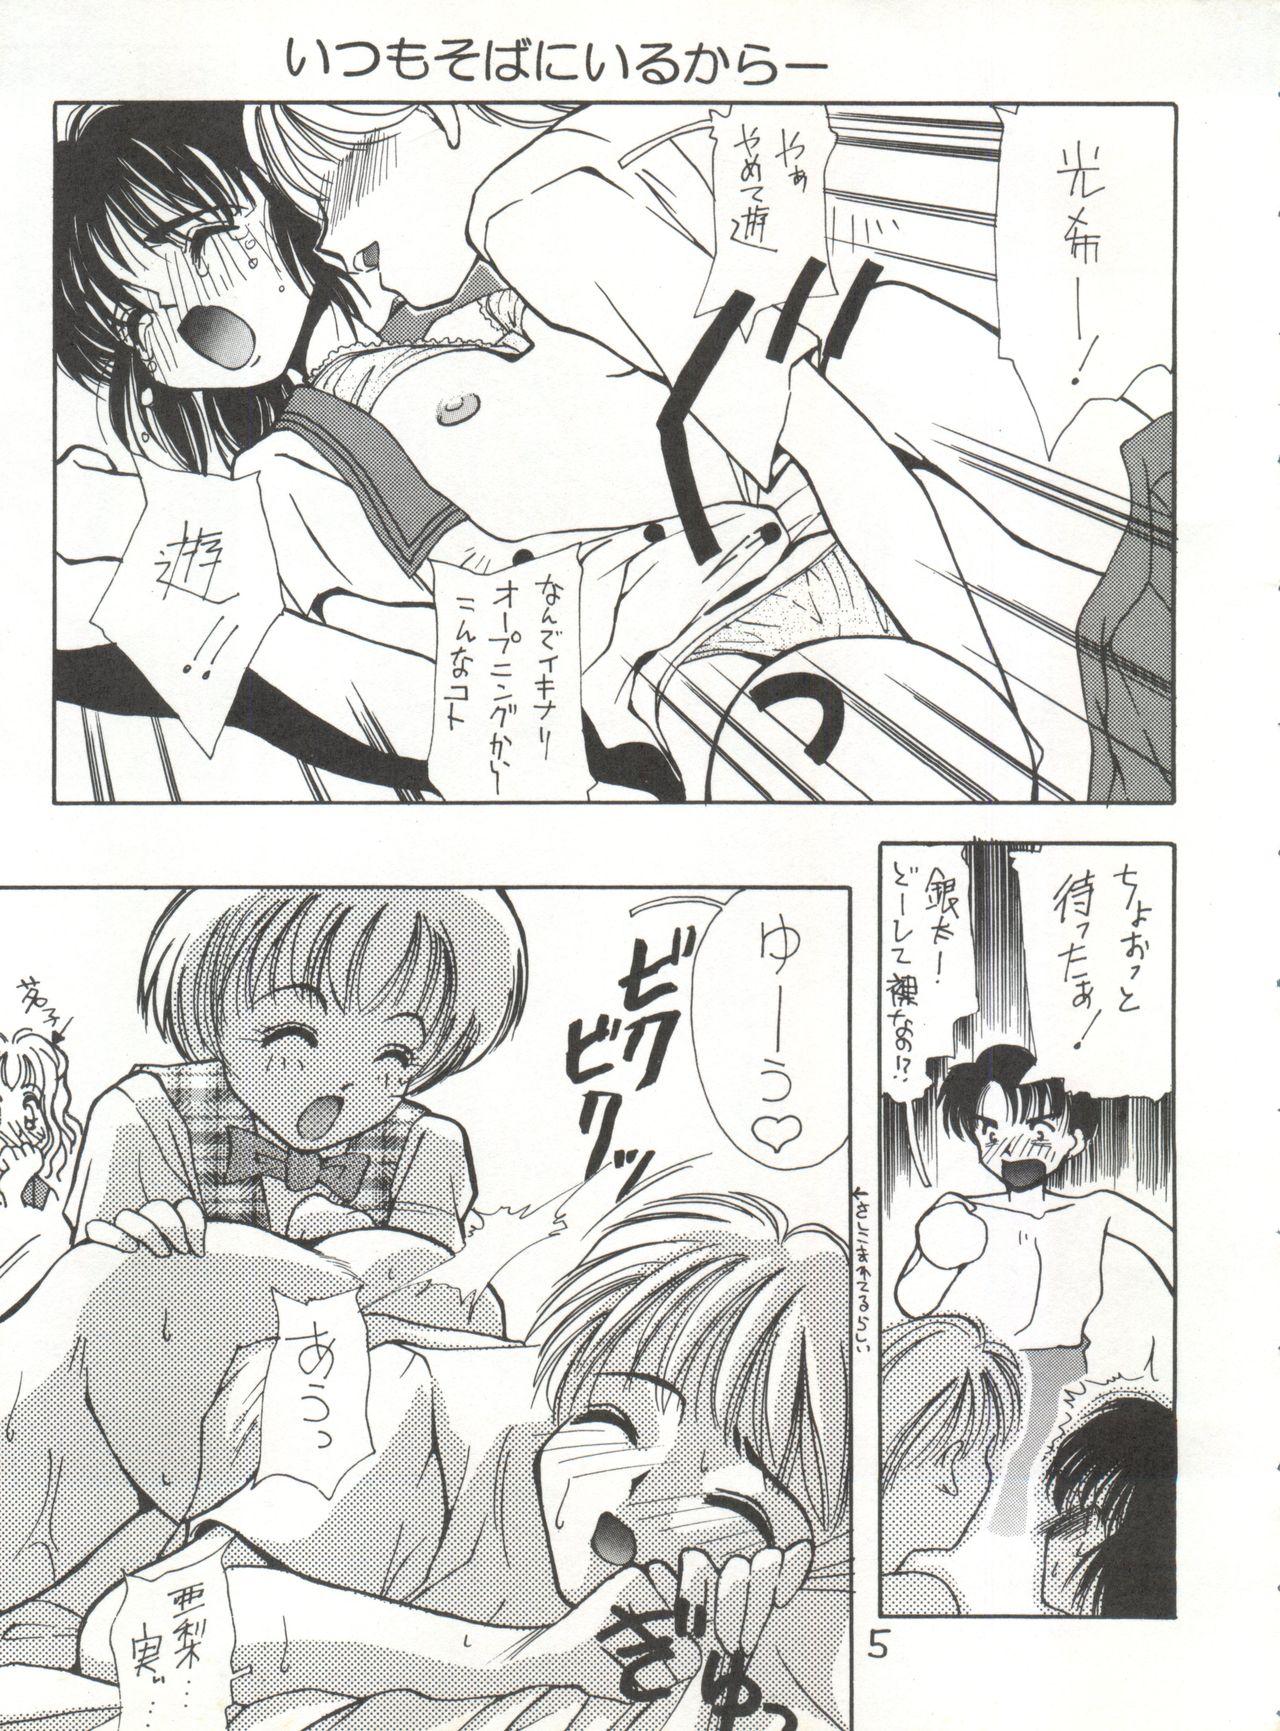 Semen Jiyuuna Megami-tachi - Marmalade boy Puto - Page 5